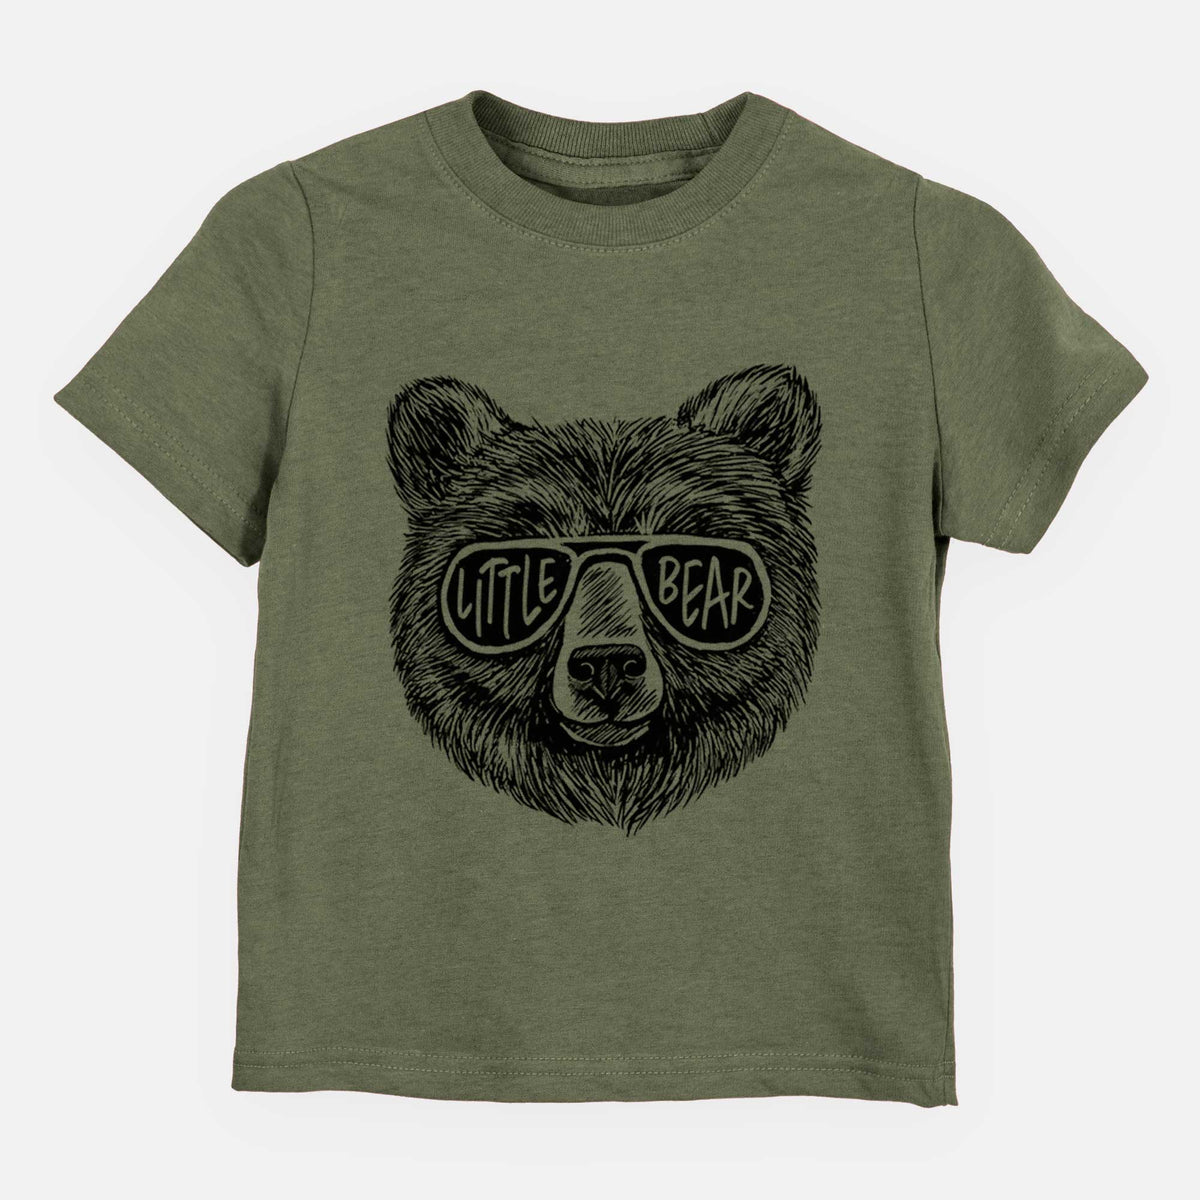 Little Bear - Kids Shirt